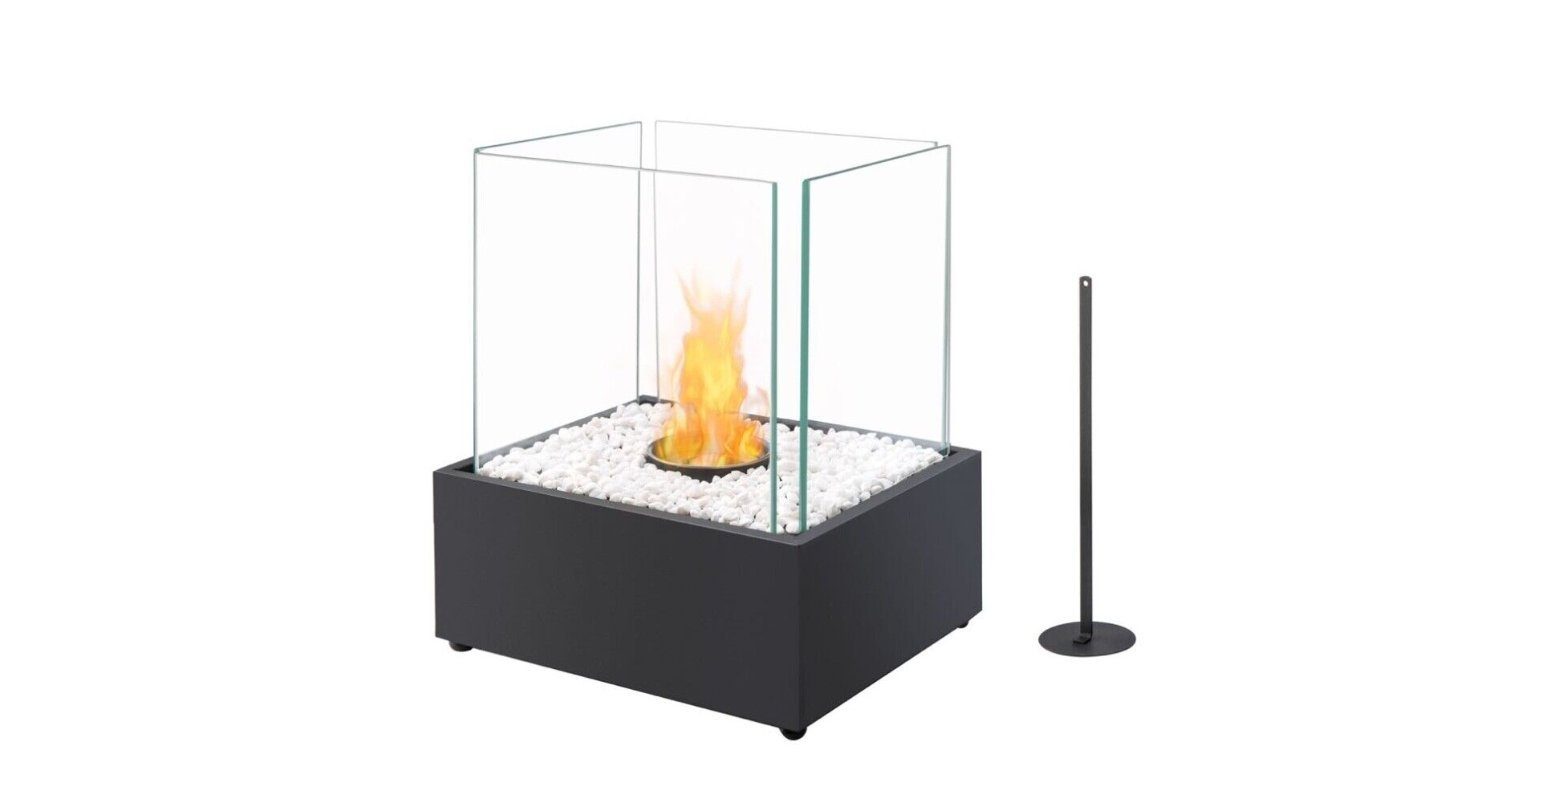 MMXX Feuerschale Tischkamin mit Bio-Ethanol, Tischofen wärmend, indoor & outdoor, wärmend